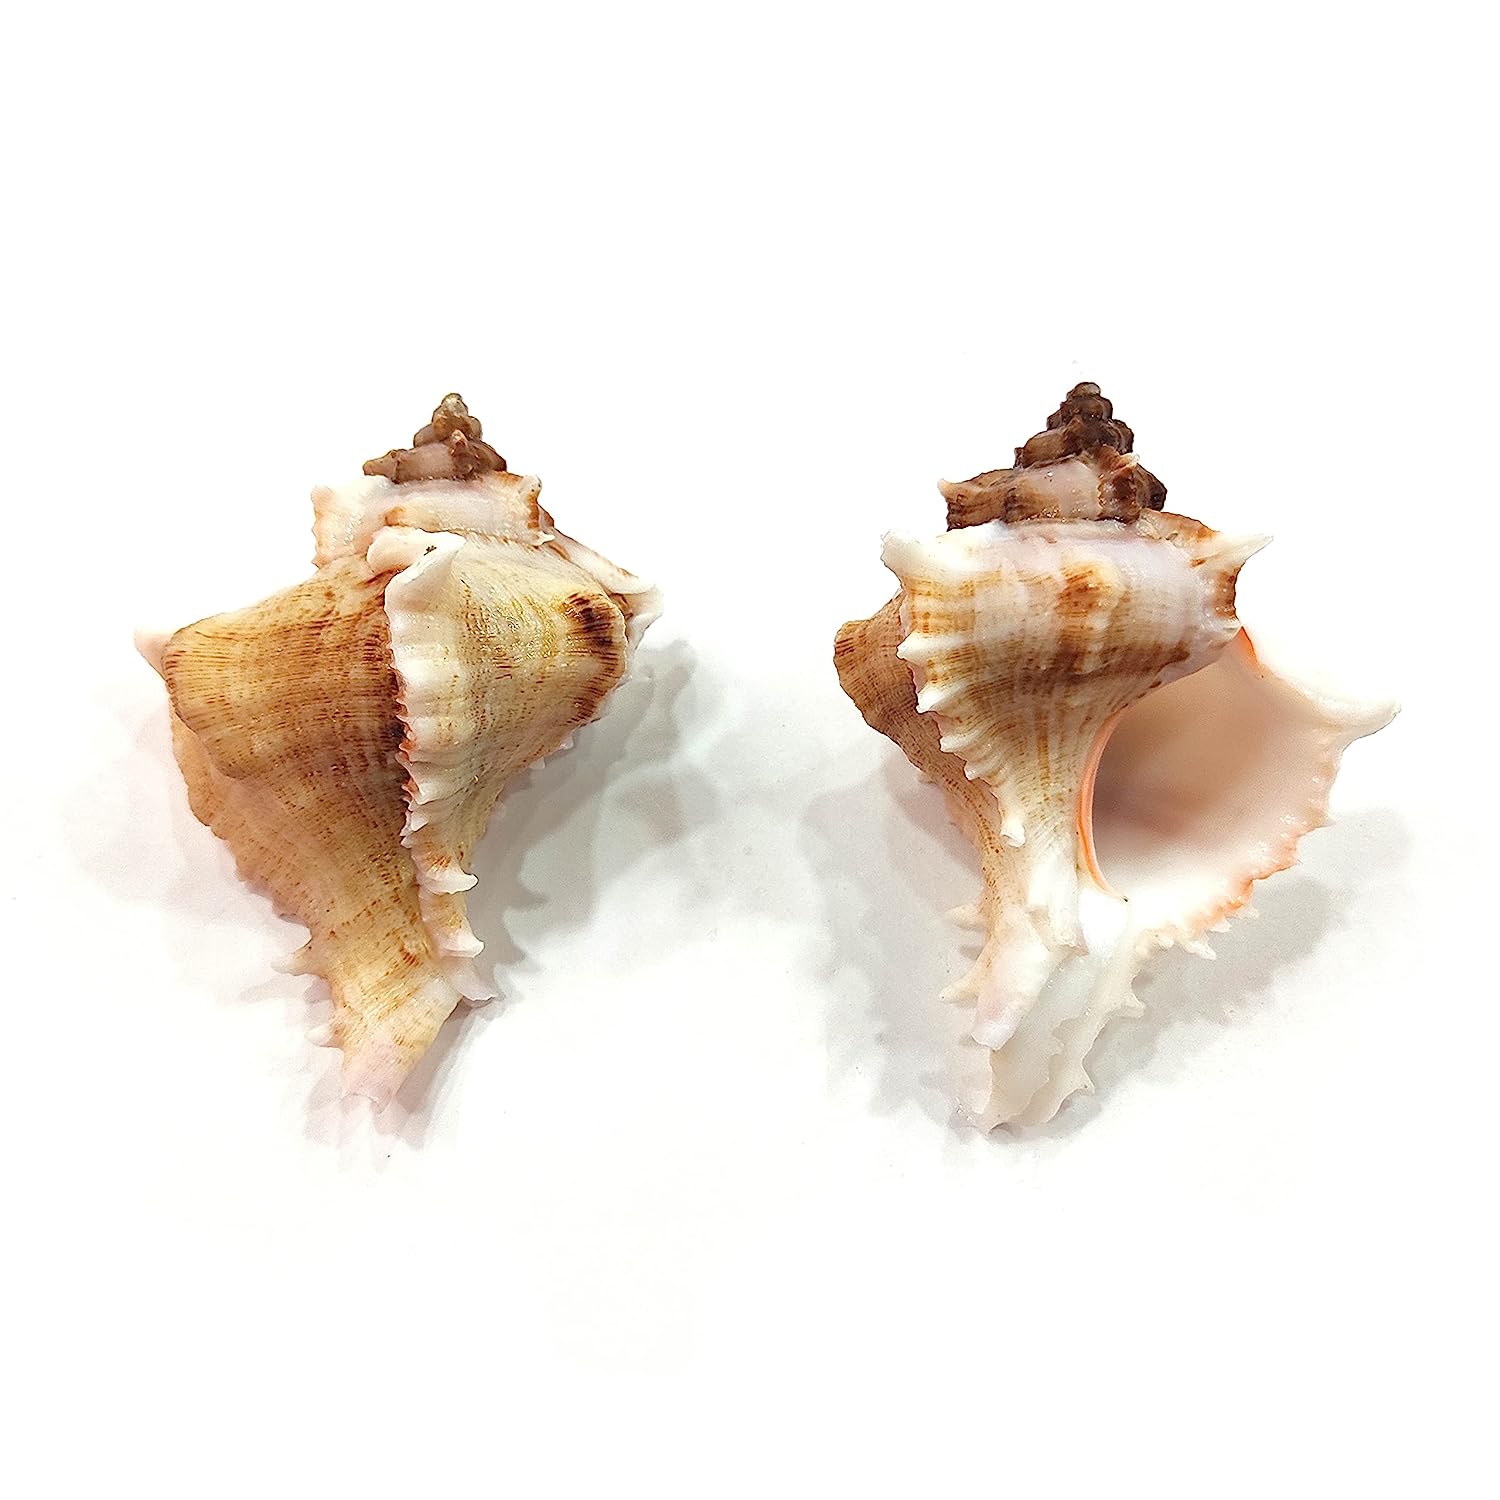 Seashell Arts and Crafts - Kottakka Mulli - Virgin Murex - Chicoreus Virgineus - Packof 10